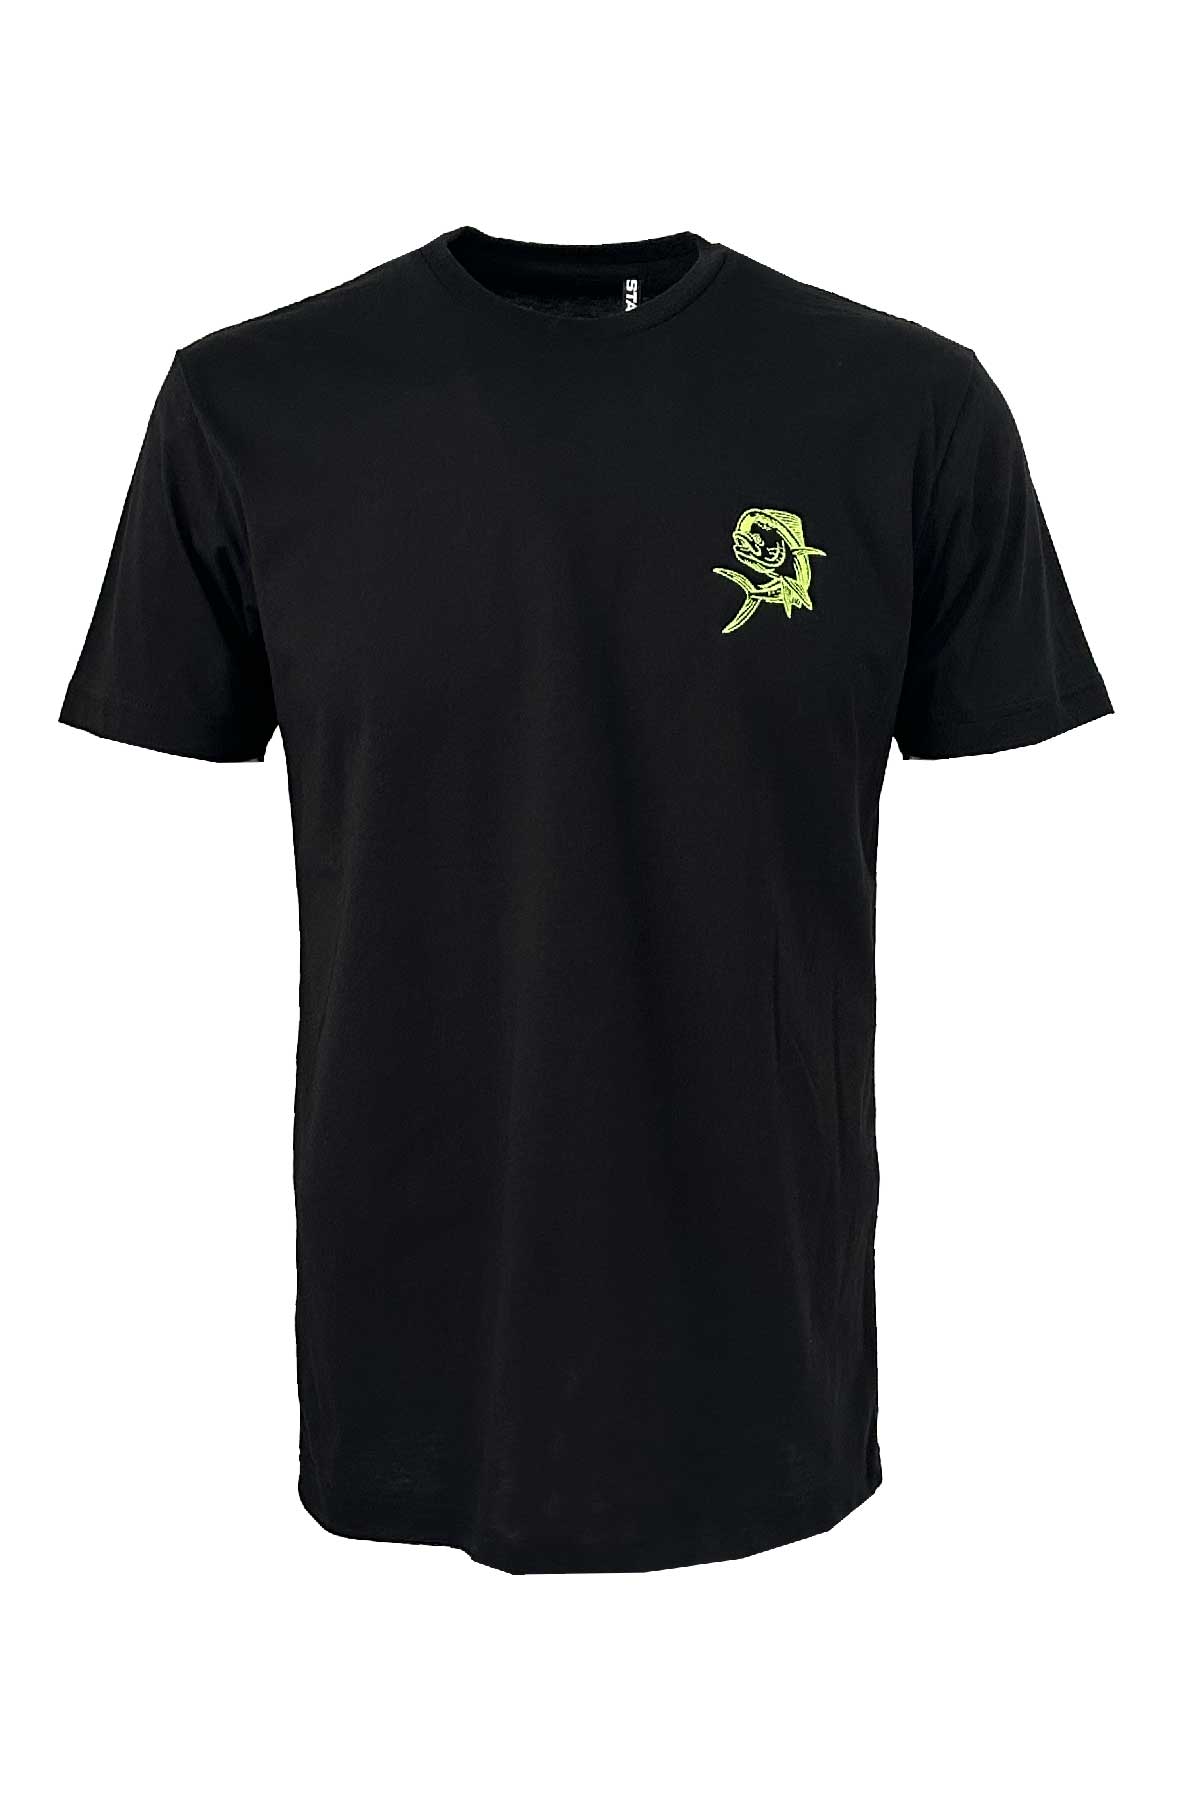 Mahi Embroidery Basic Short Sleeve Crew Neck T-Shirt - Black